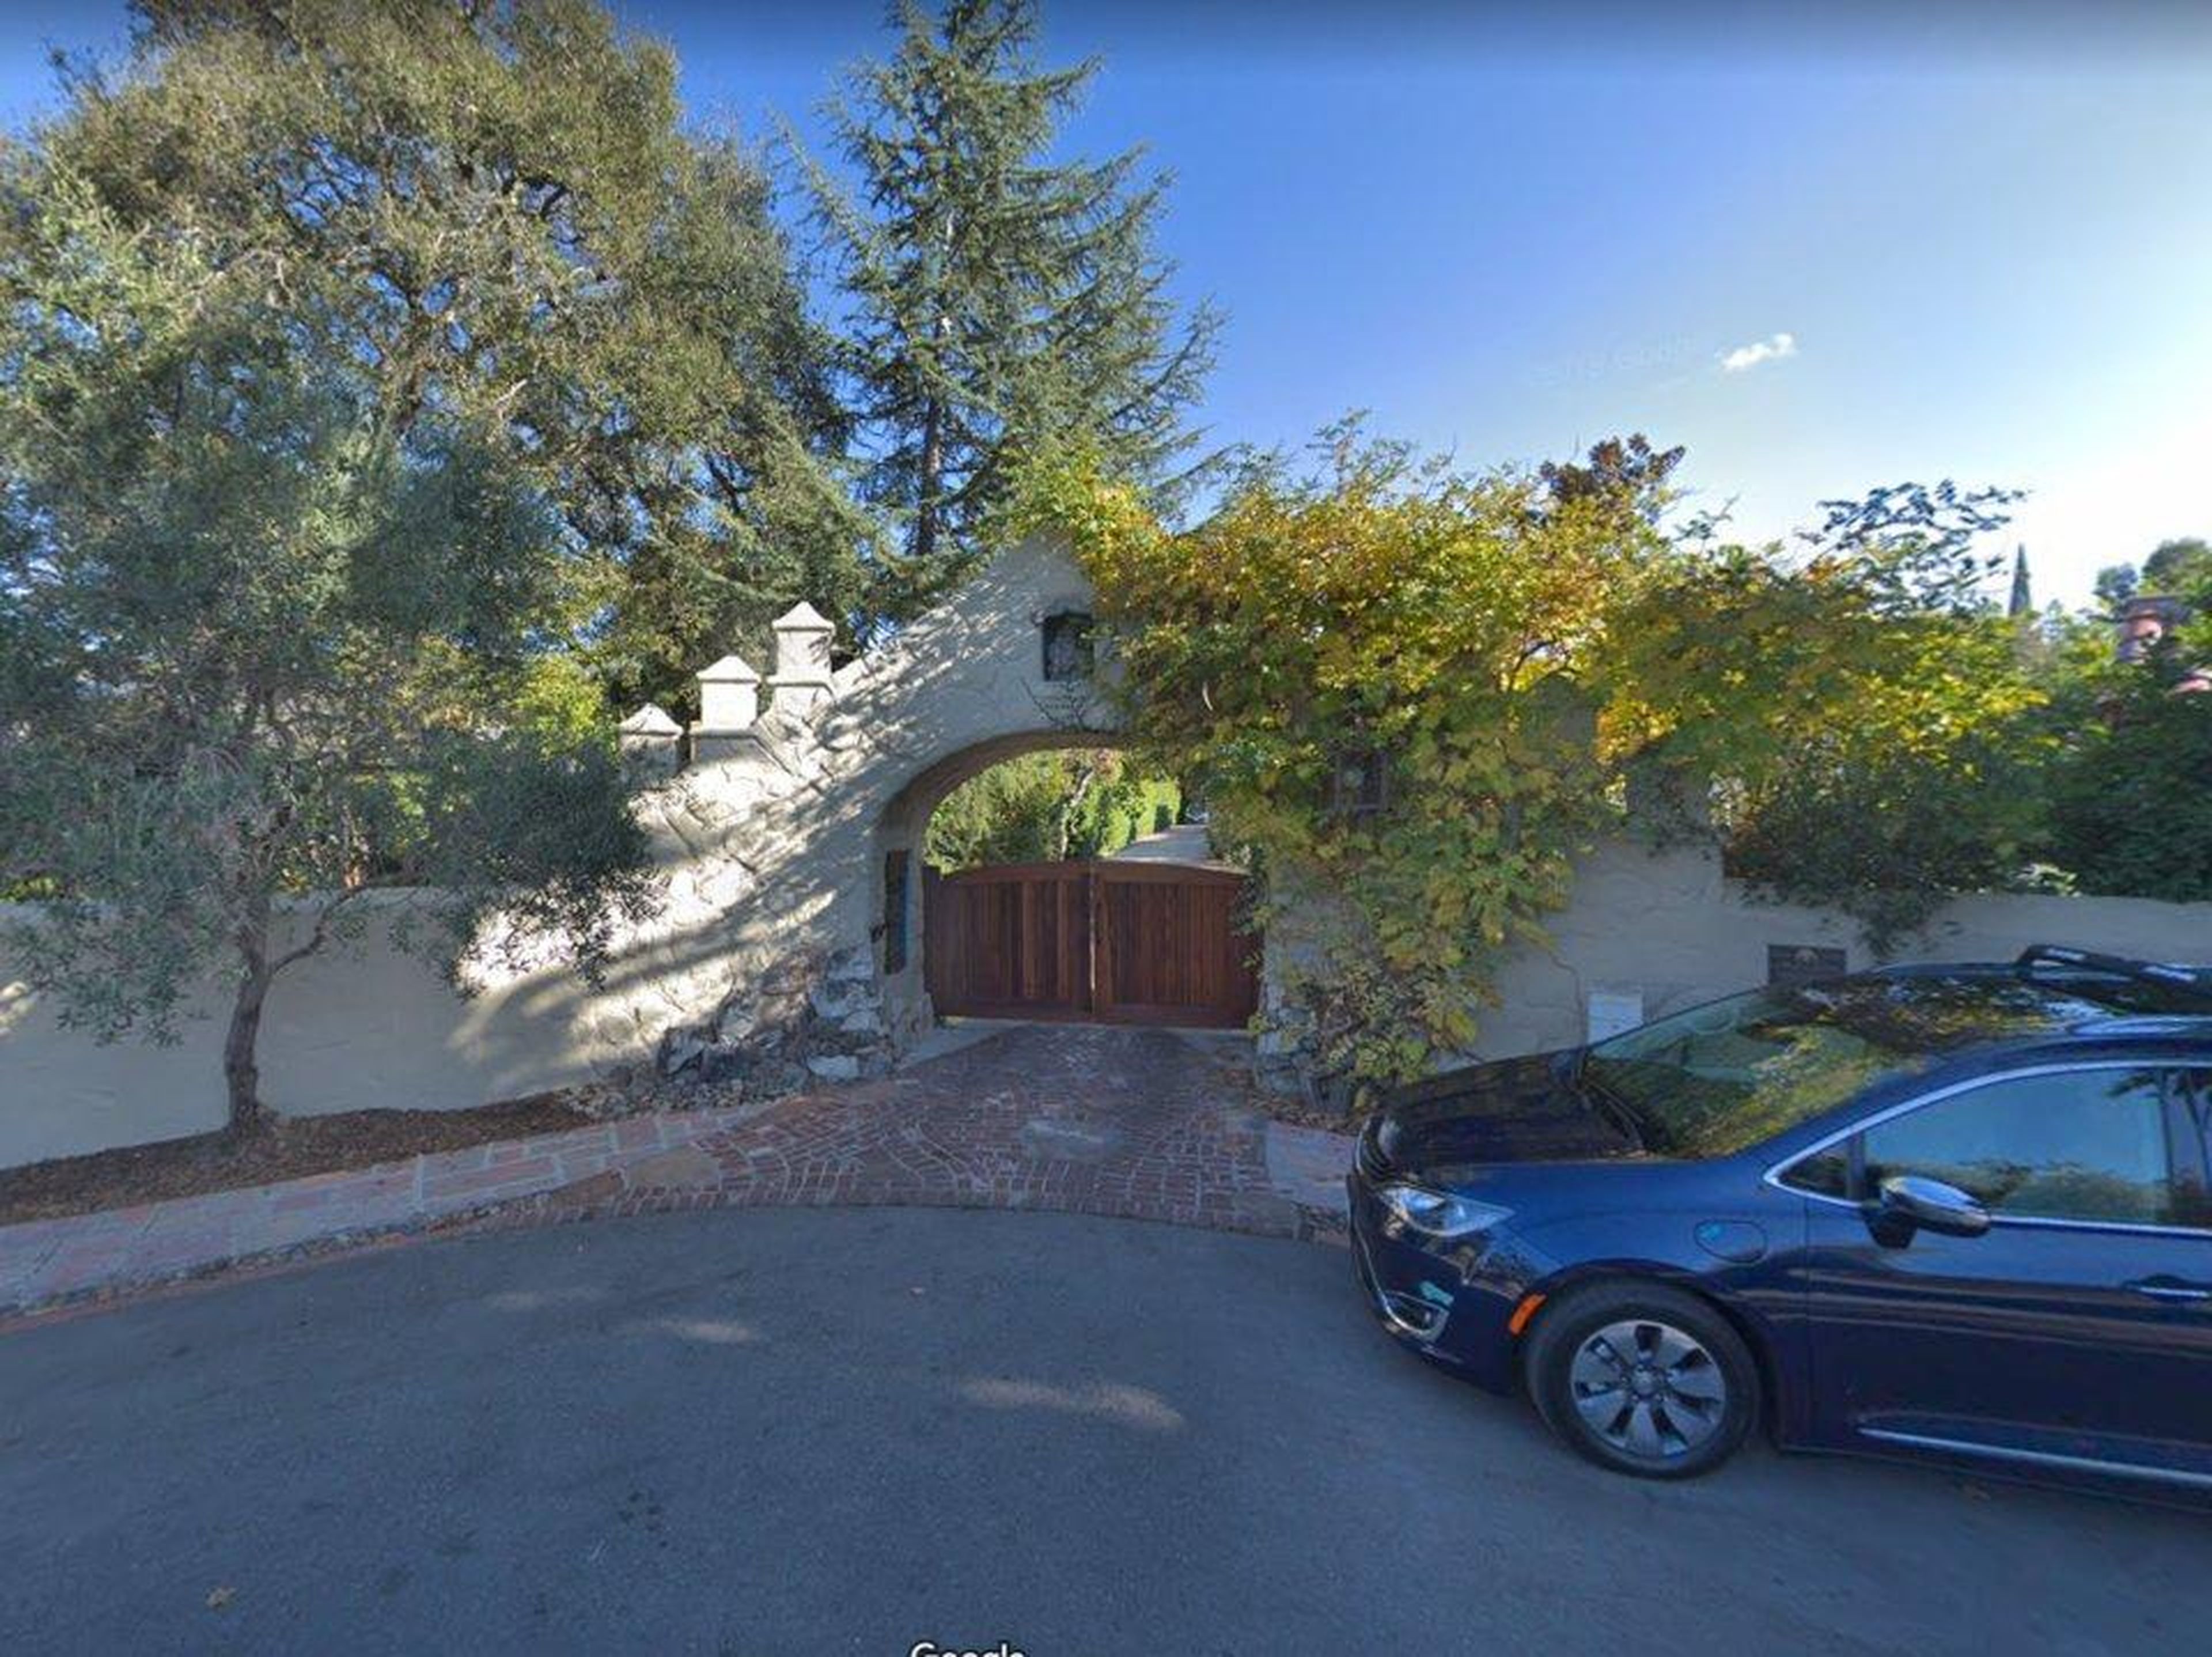 [RE] Larry Page, cofundador de Google y CEO de Alphabet, compró una casa de 7,2 millones de dólares en el barrio Old Palo Alto de Palo Alto en 2005.